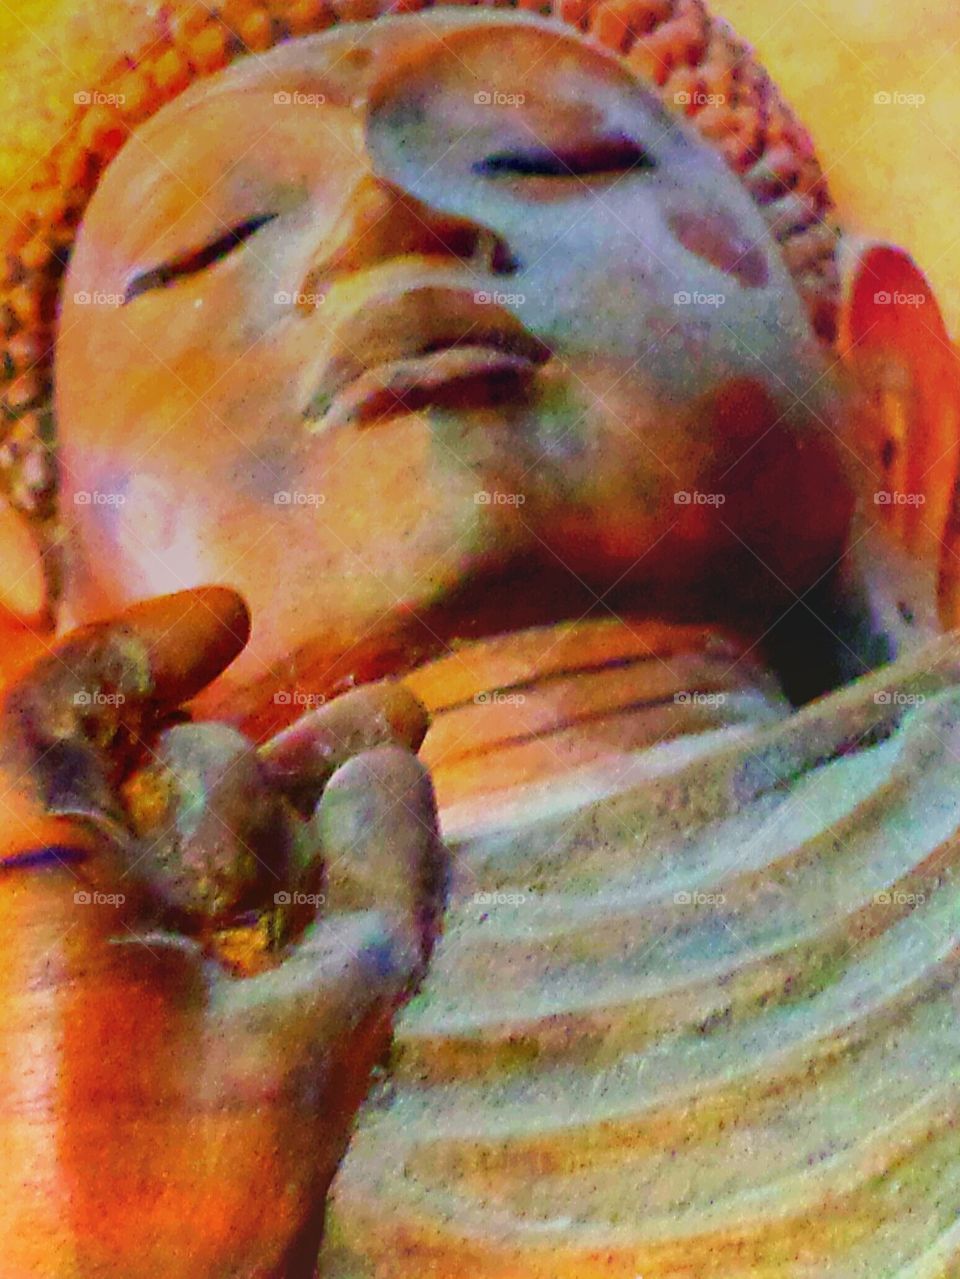 "Meditating Buddha"